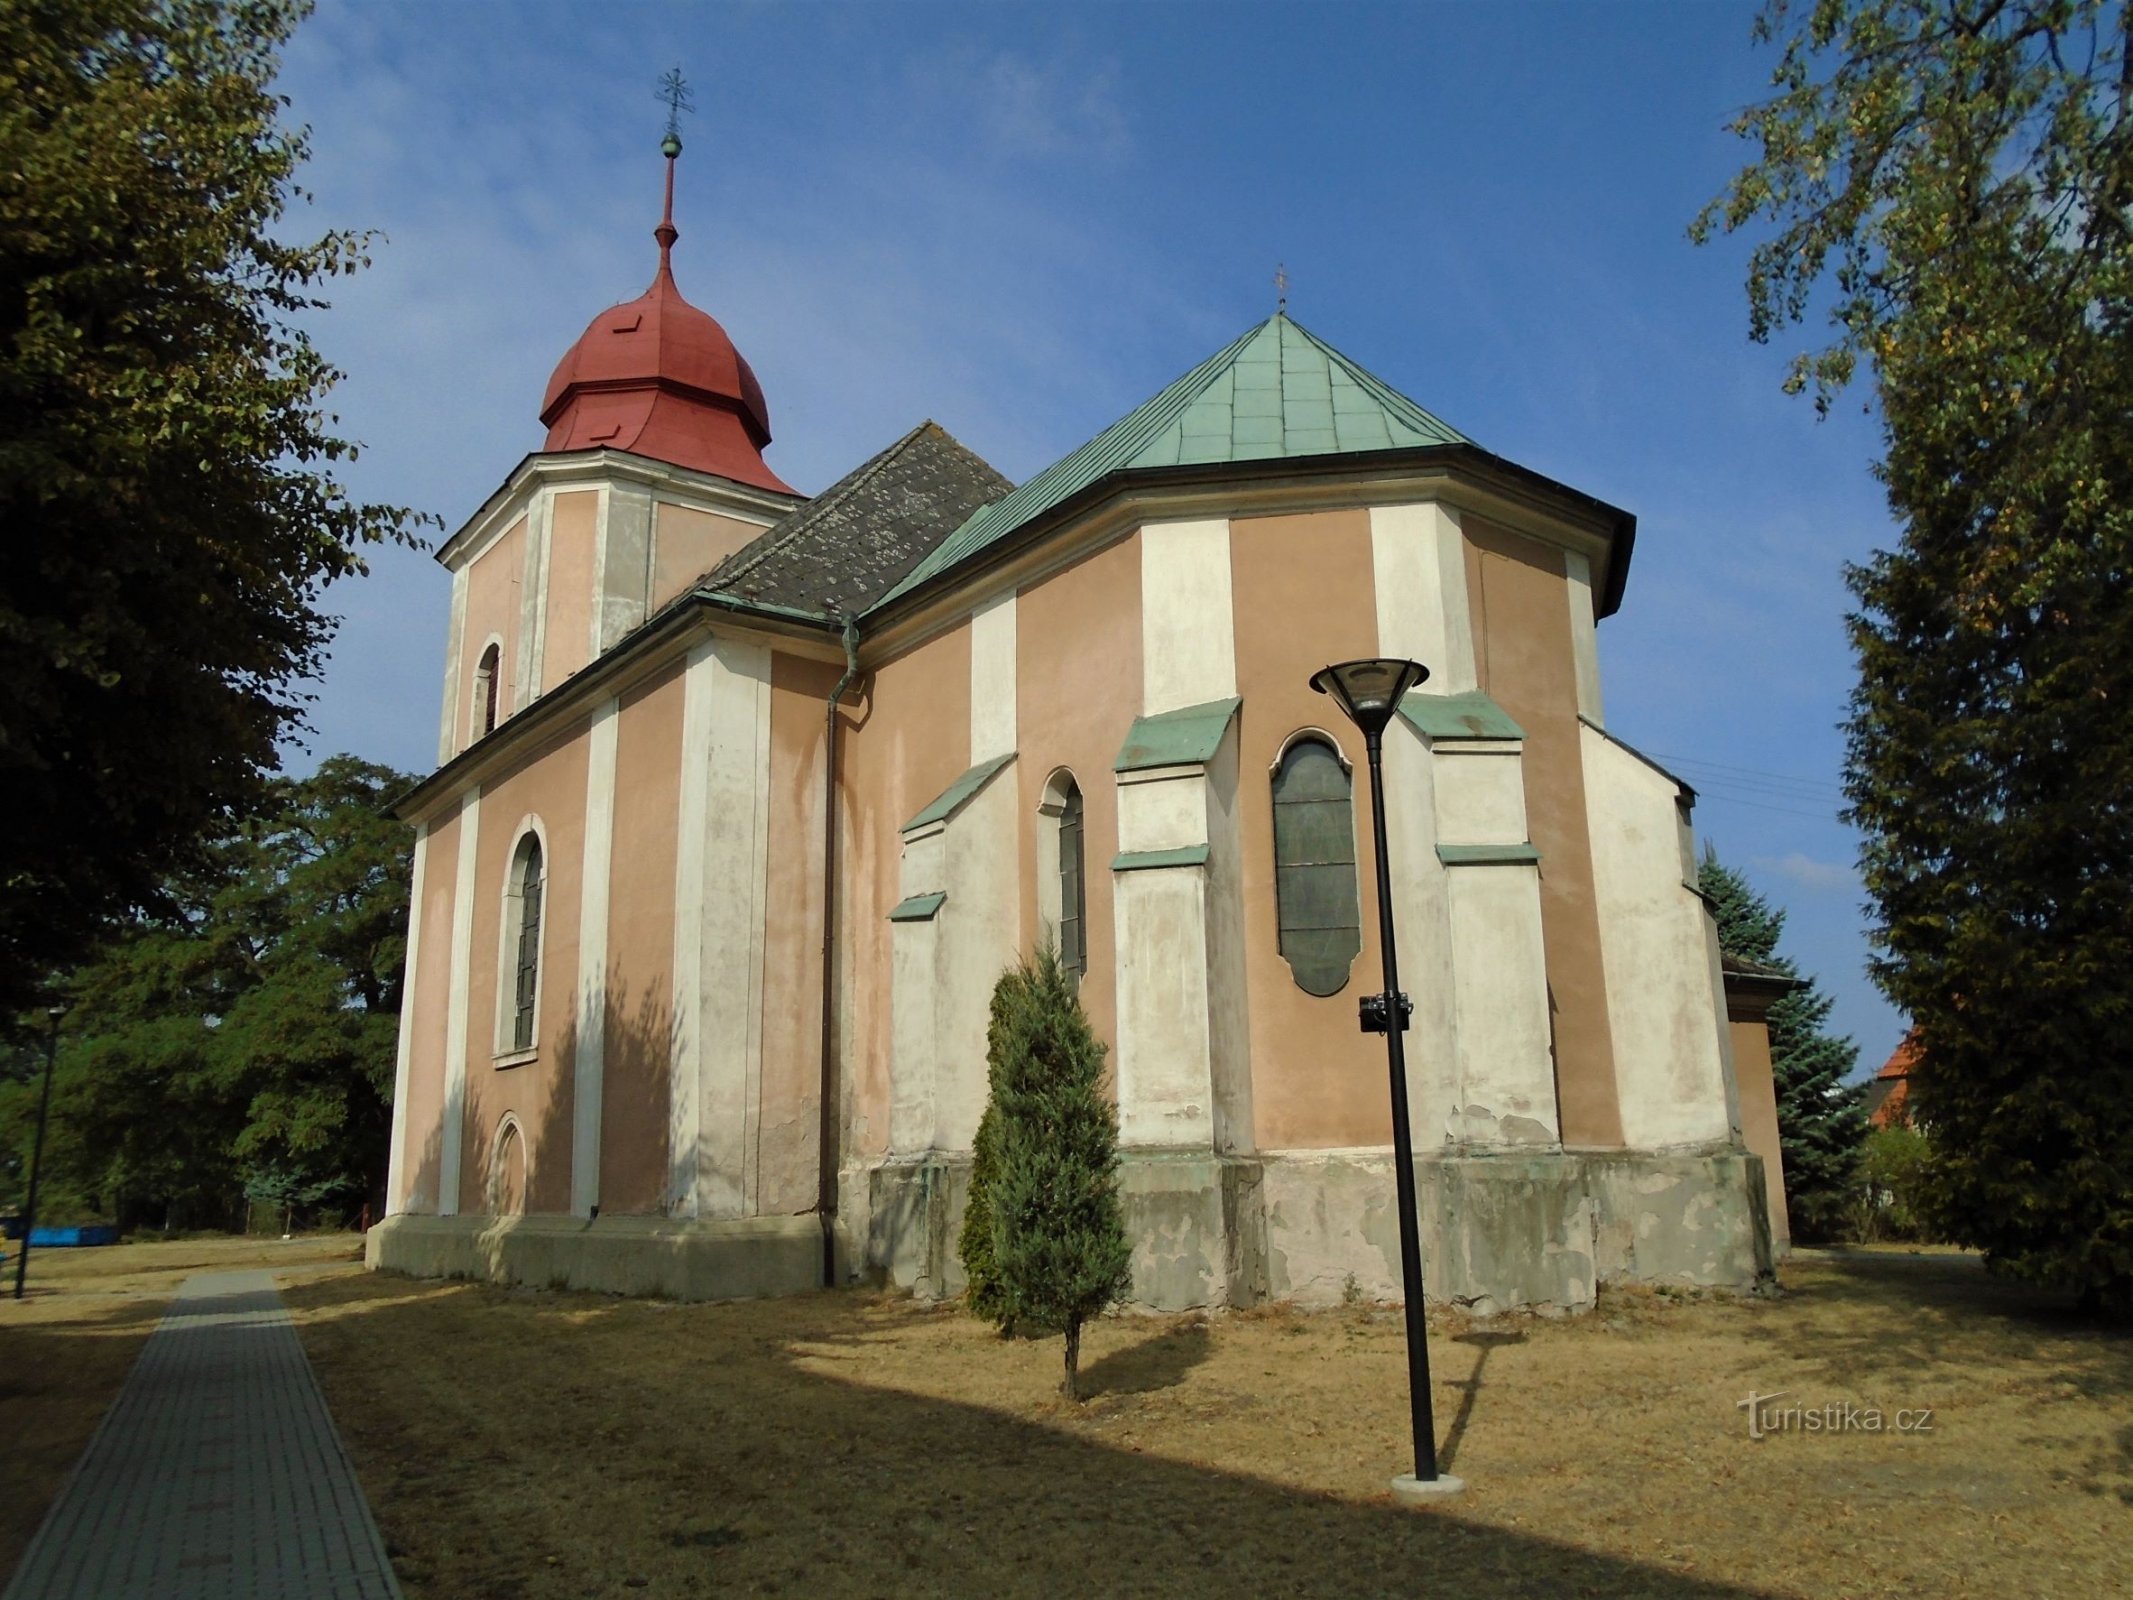 Church of St. Peter and Paul (Rohovládova Bělá, 31.8.2018 August XNUMX)